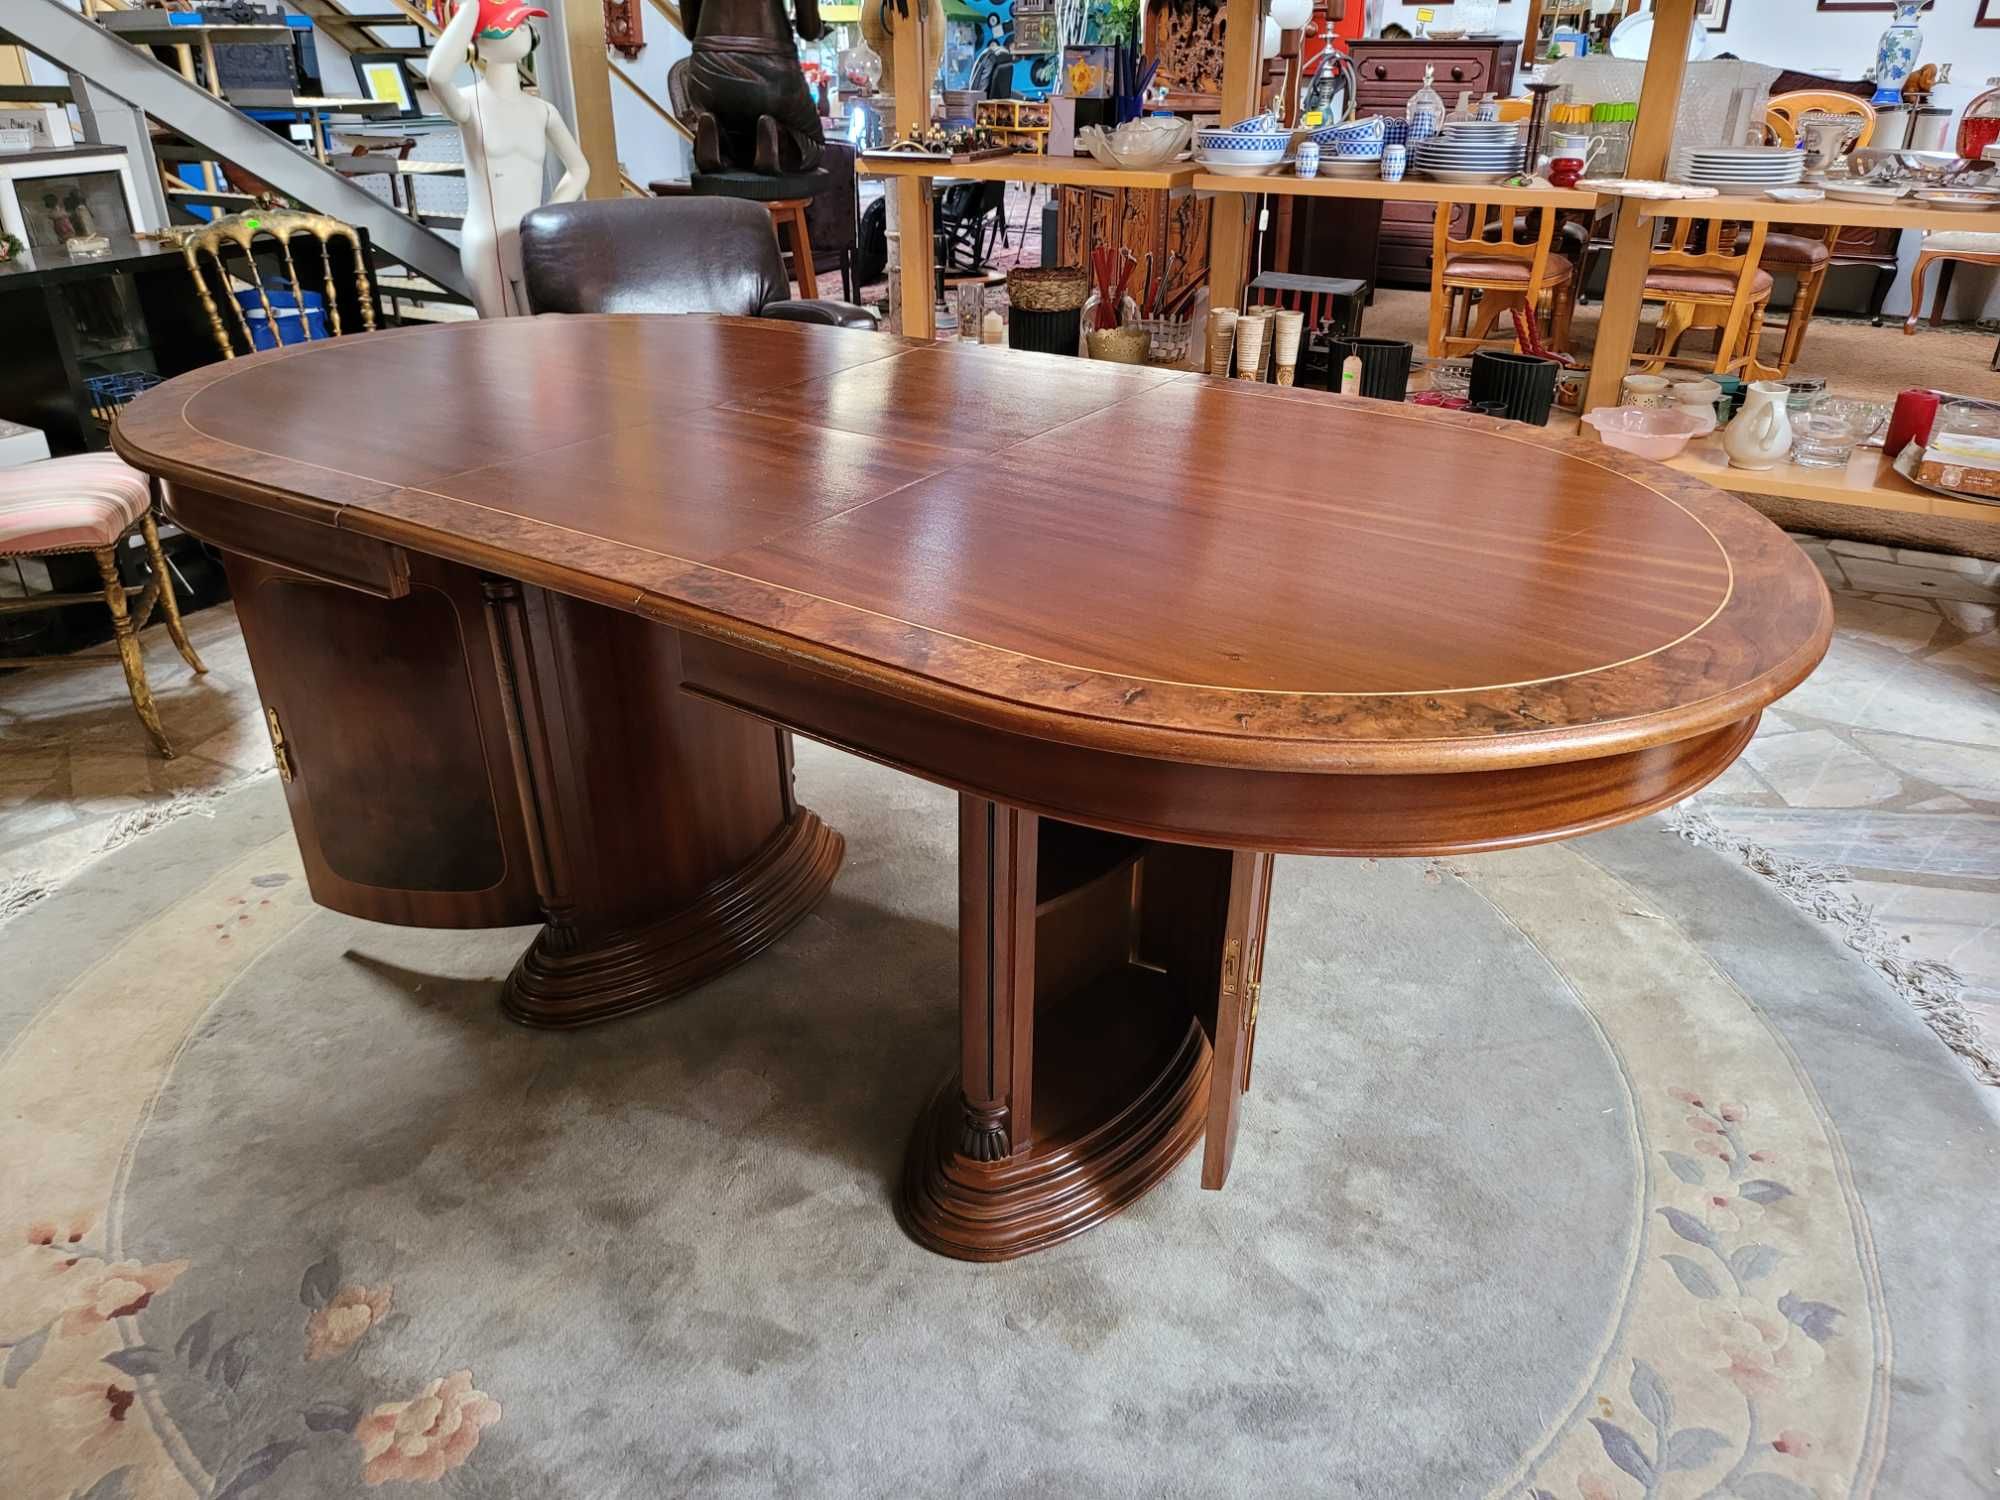 Belíssima mesa de sala em madeira maciça com arrumação em ambos os